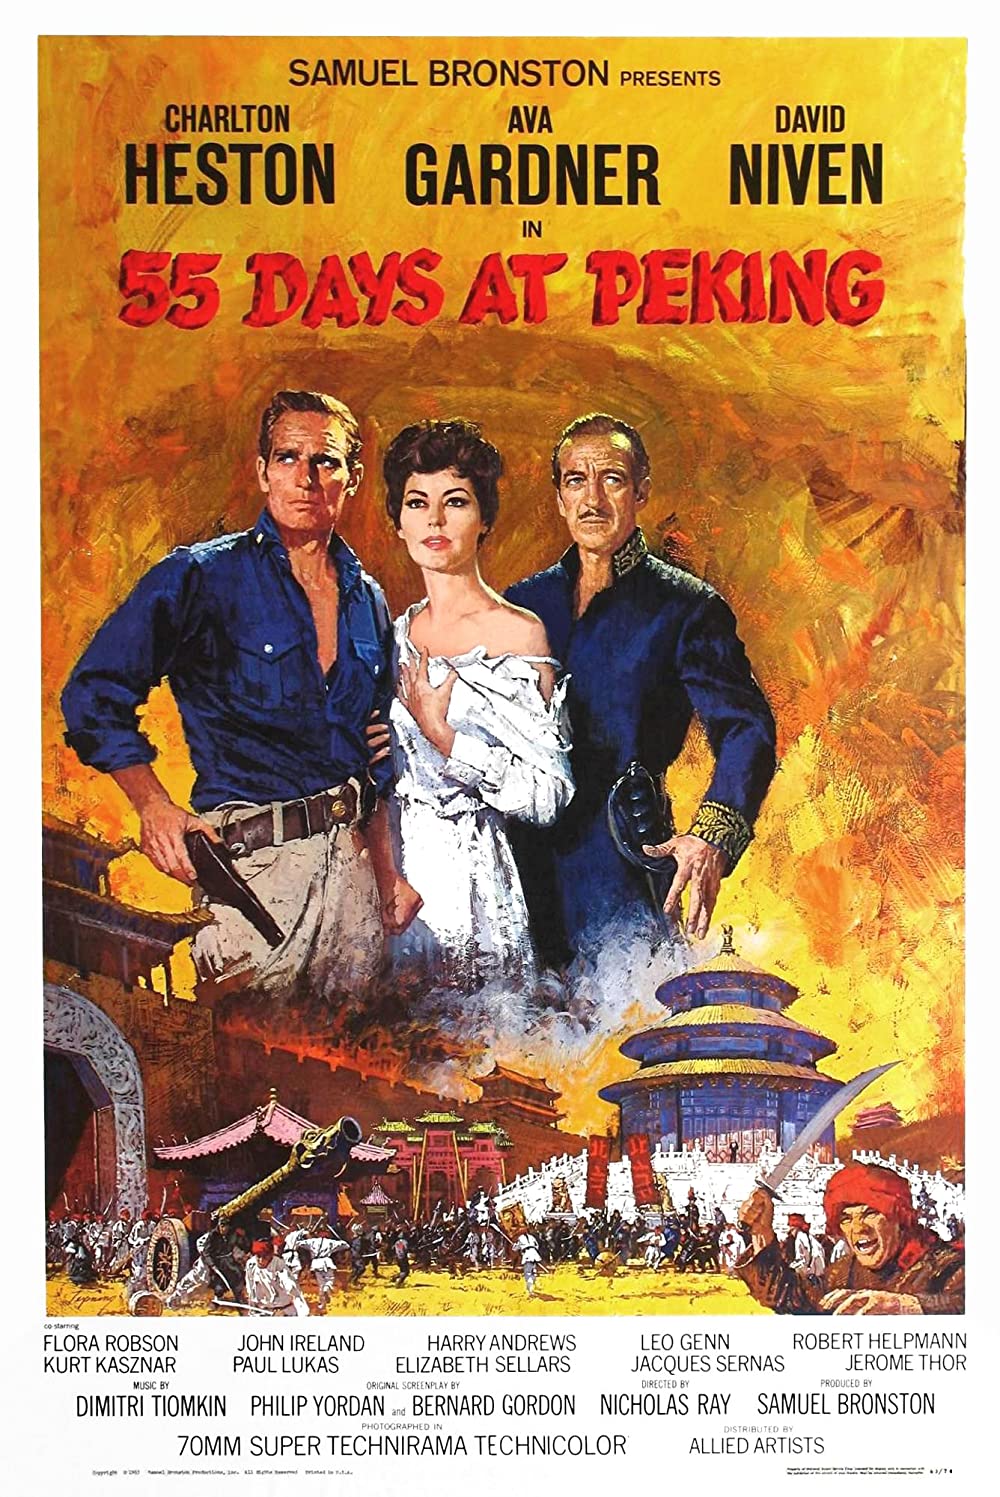 55 Tage in Peking